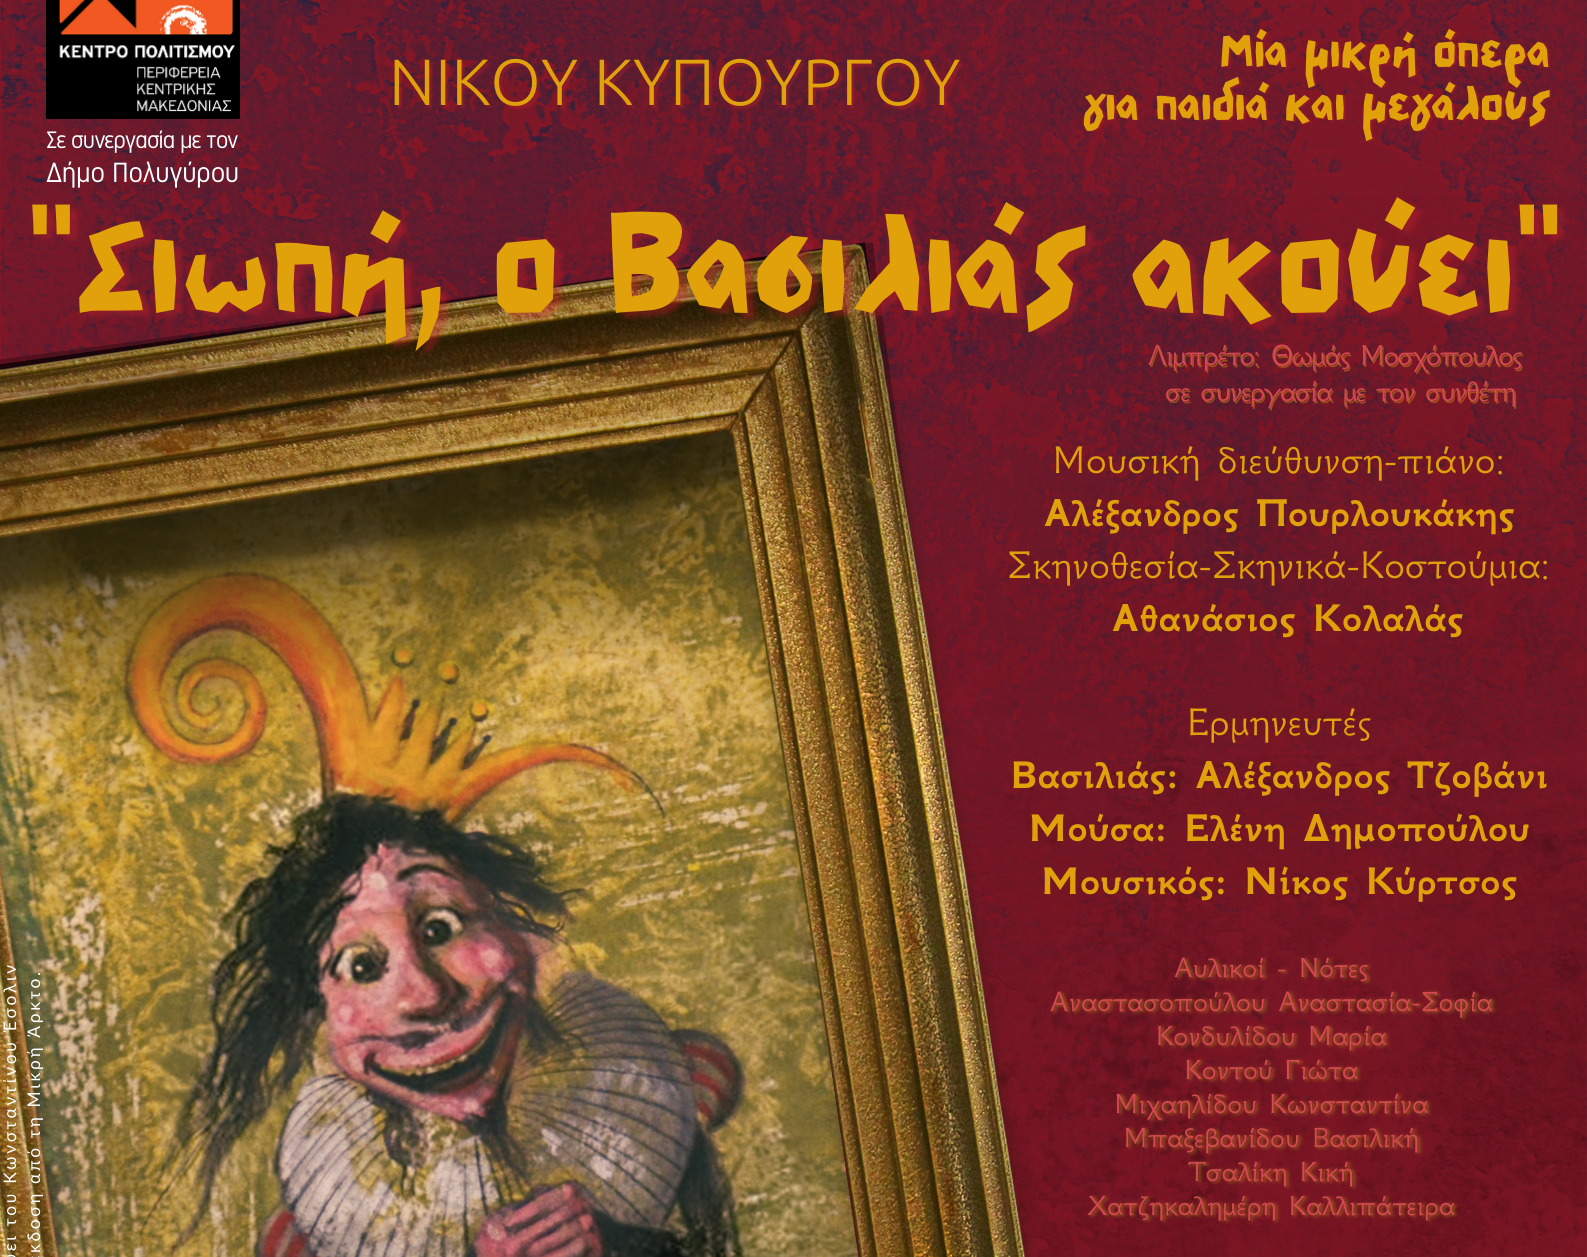 Η μικρή όπερα «Σιωπή, ο Βασιλιάς ακούει» στο Δημοτικό Θέατρο Πολυγύρου